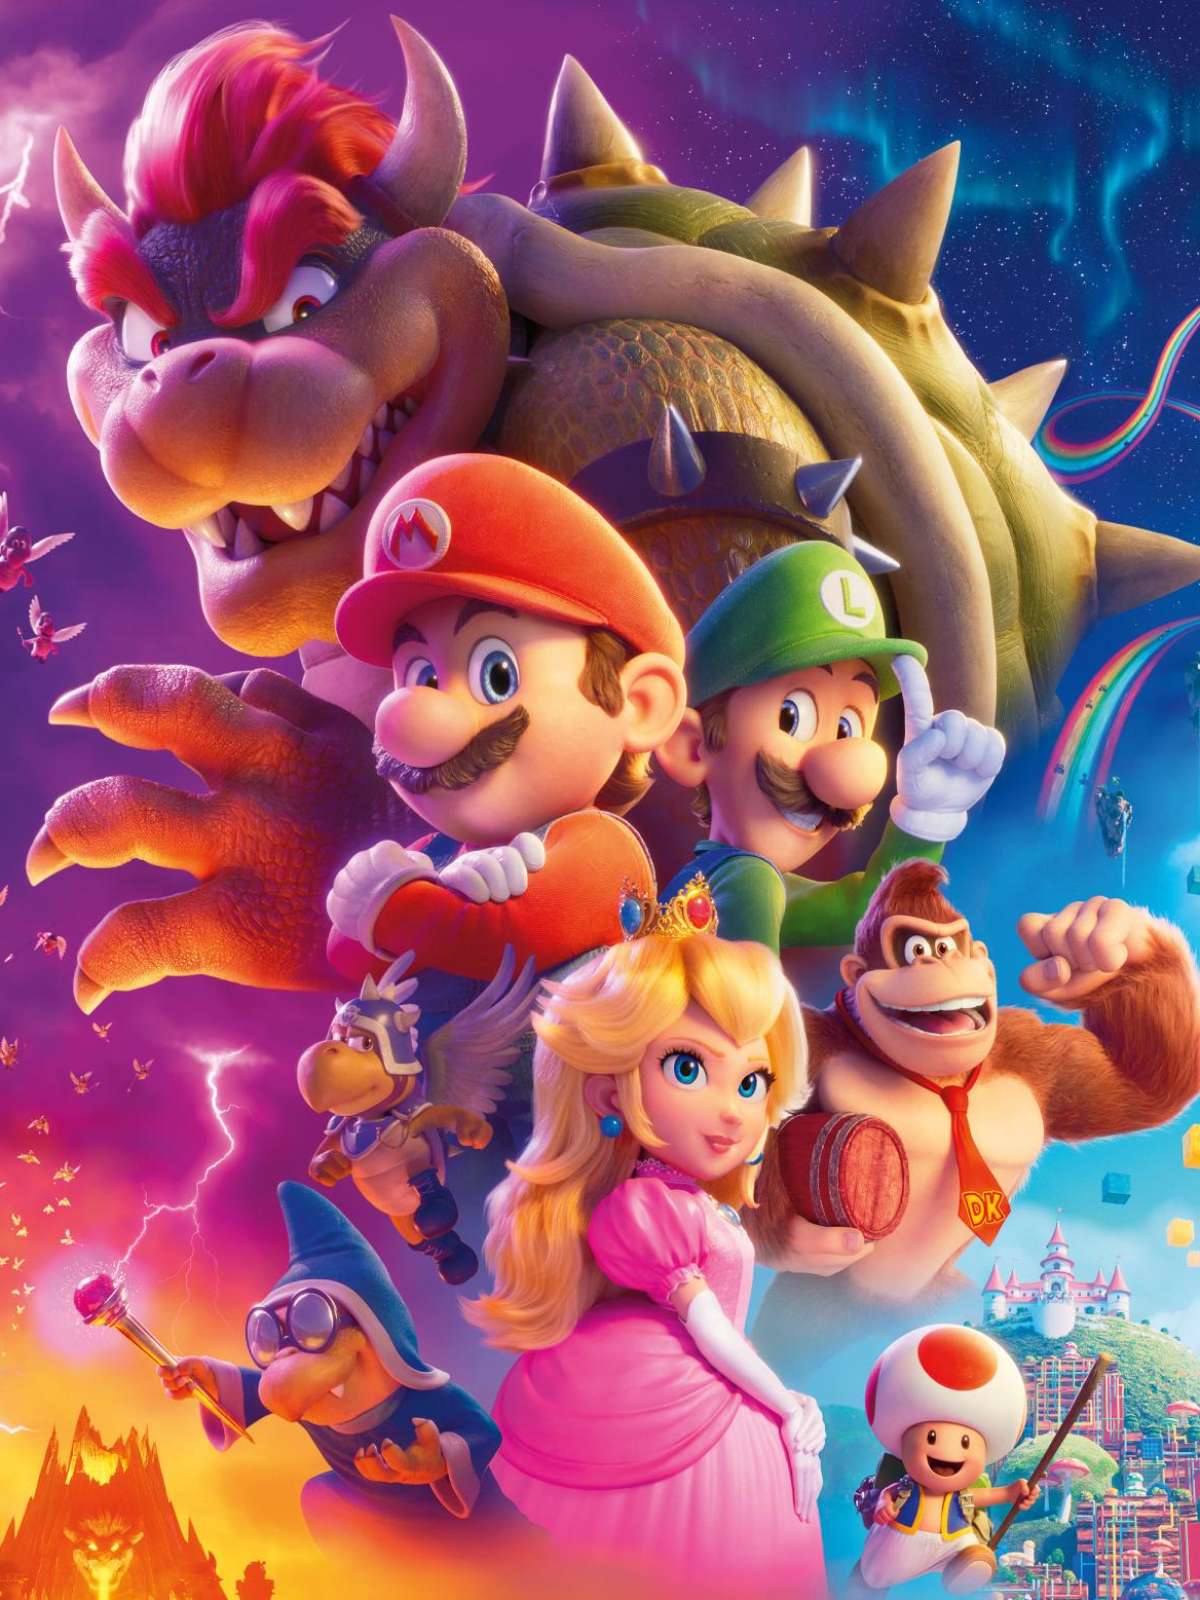 Super Mario Bros - Saiba tudo sobre o novo filme do bigodudo